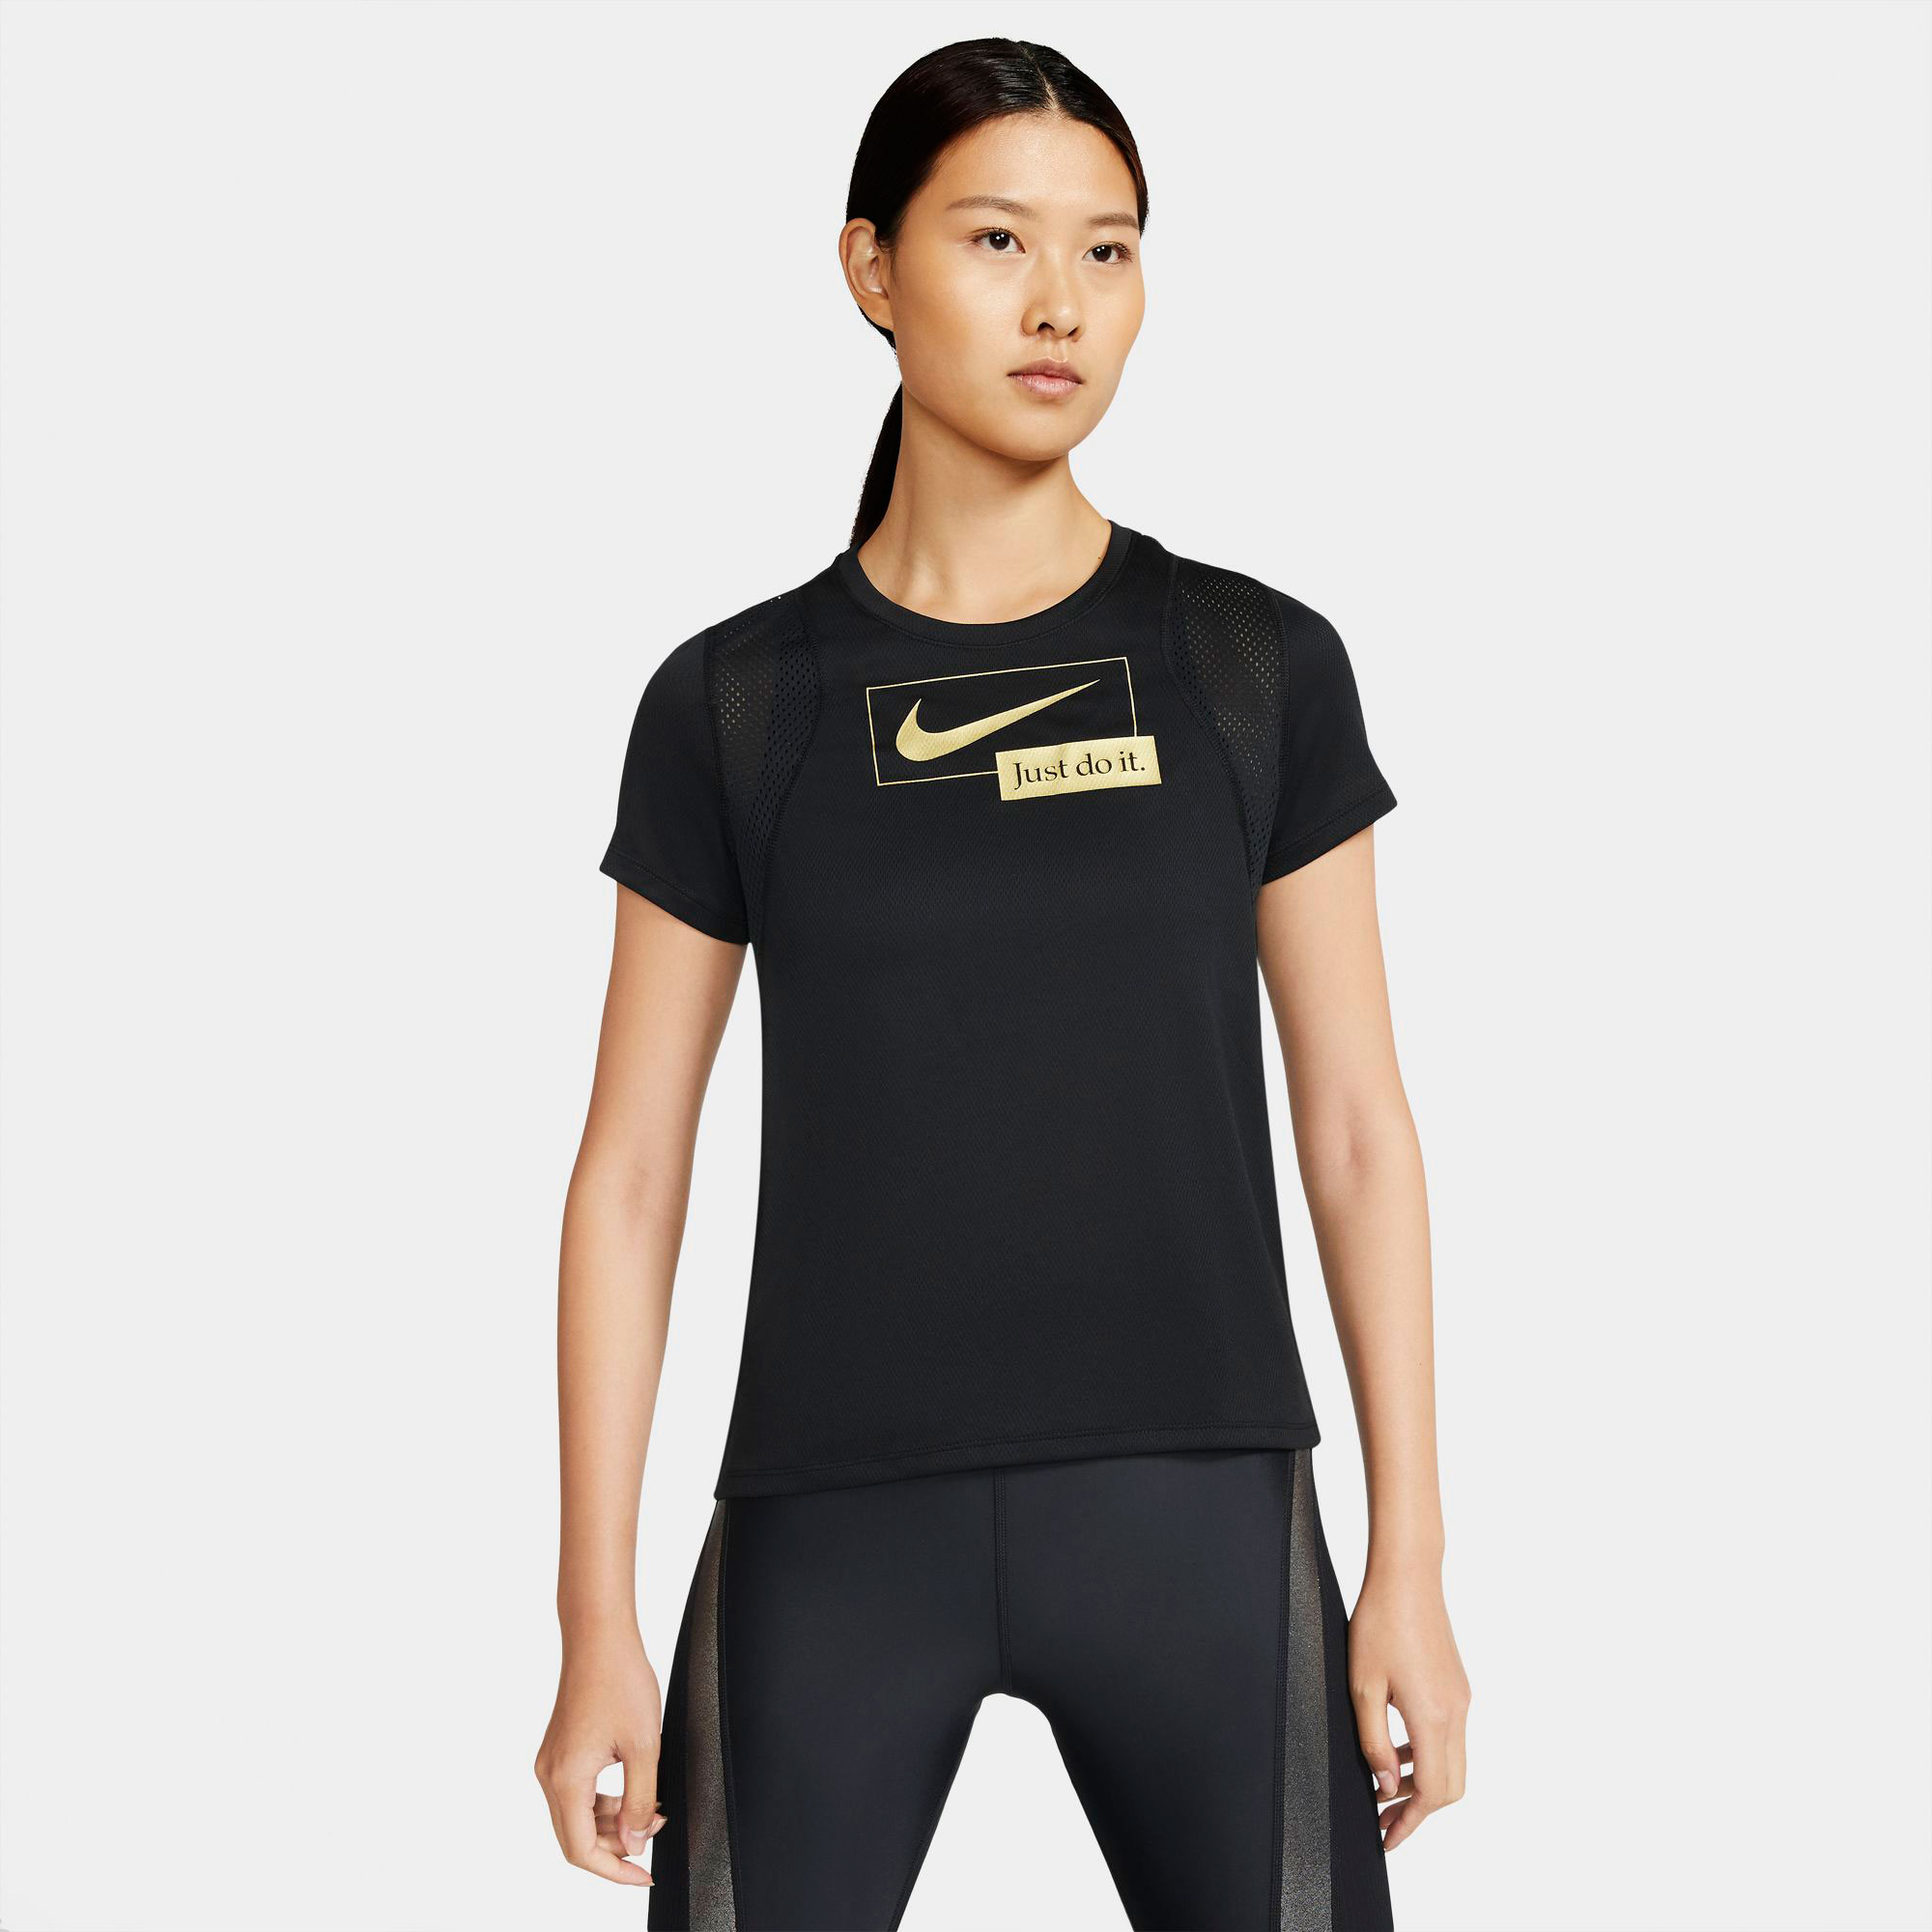 Women's running T-shirt